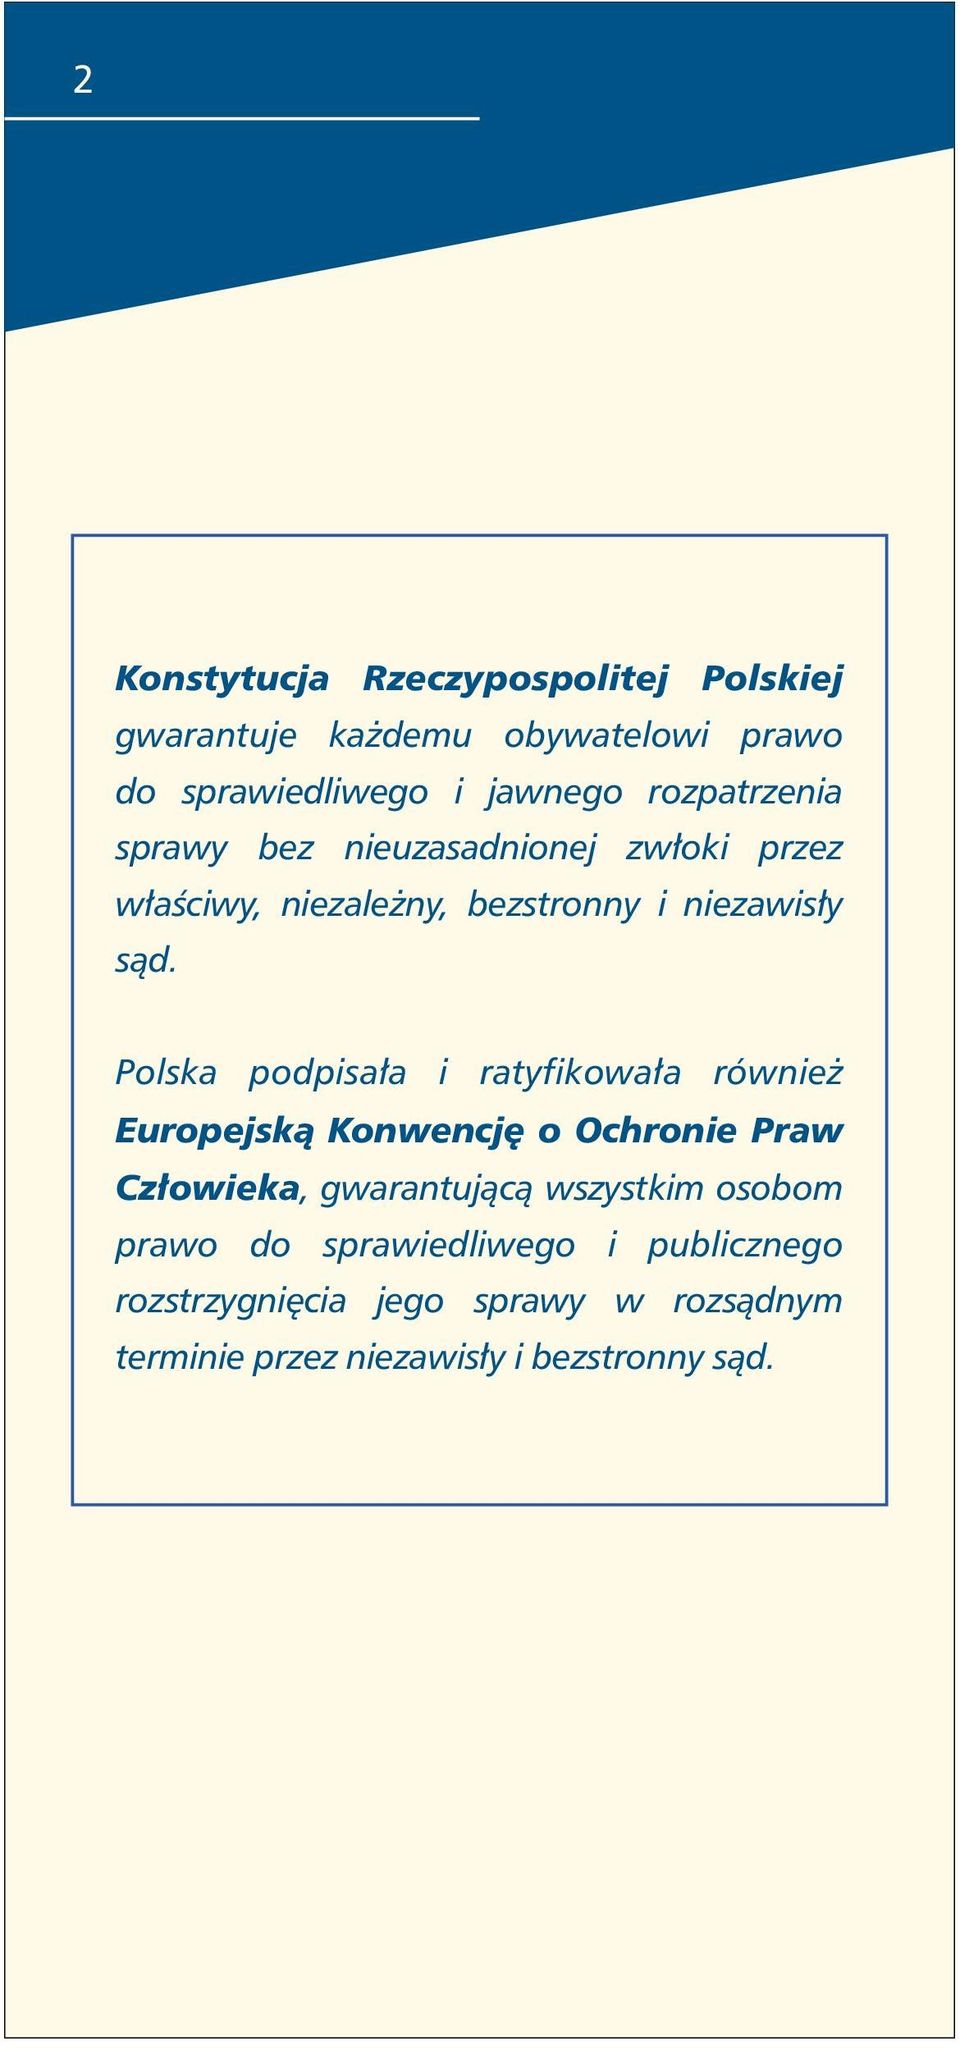 Polska podpisała i ratyfikowała również Europejską Konwencję o Ochronie Praw Człowieka, gwarantującą wszystkim